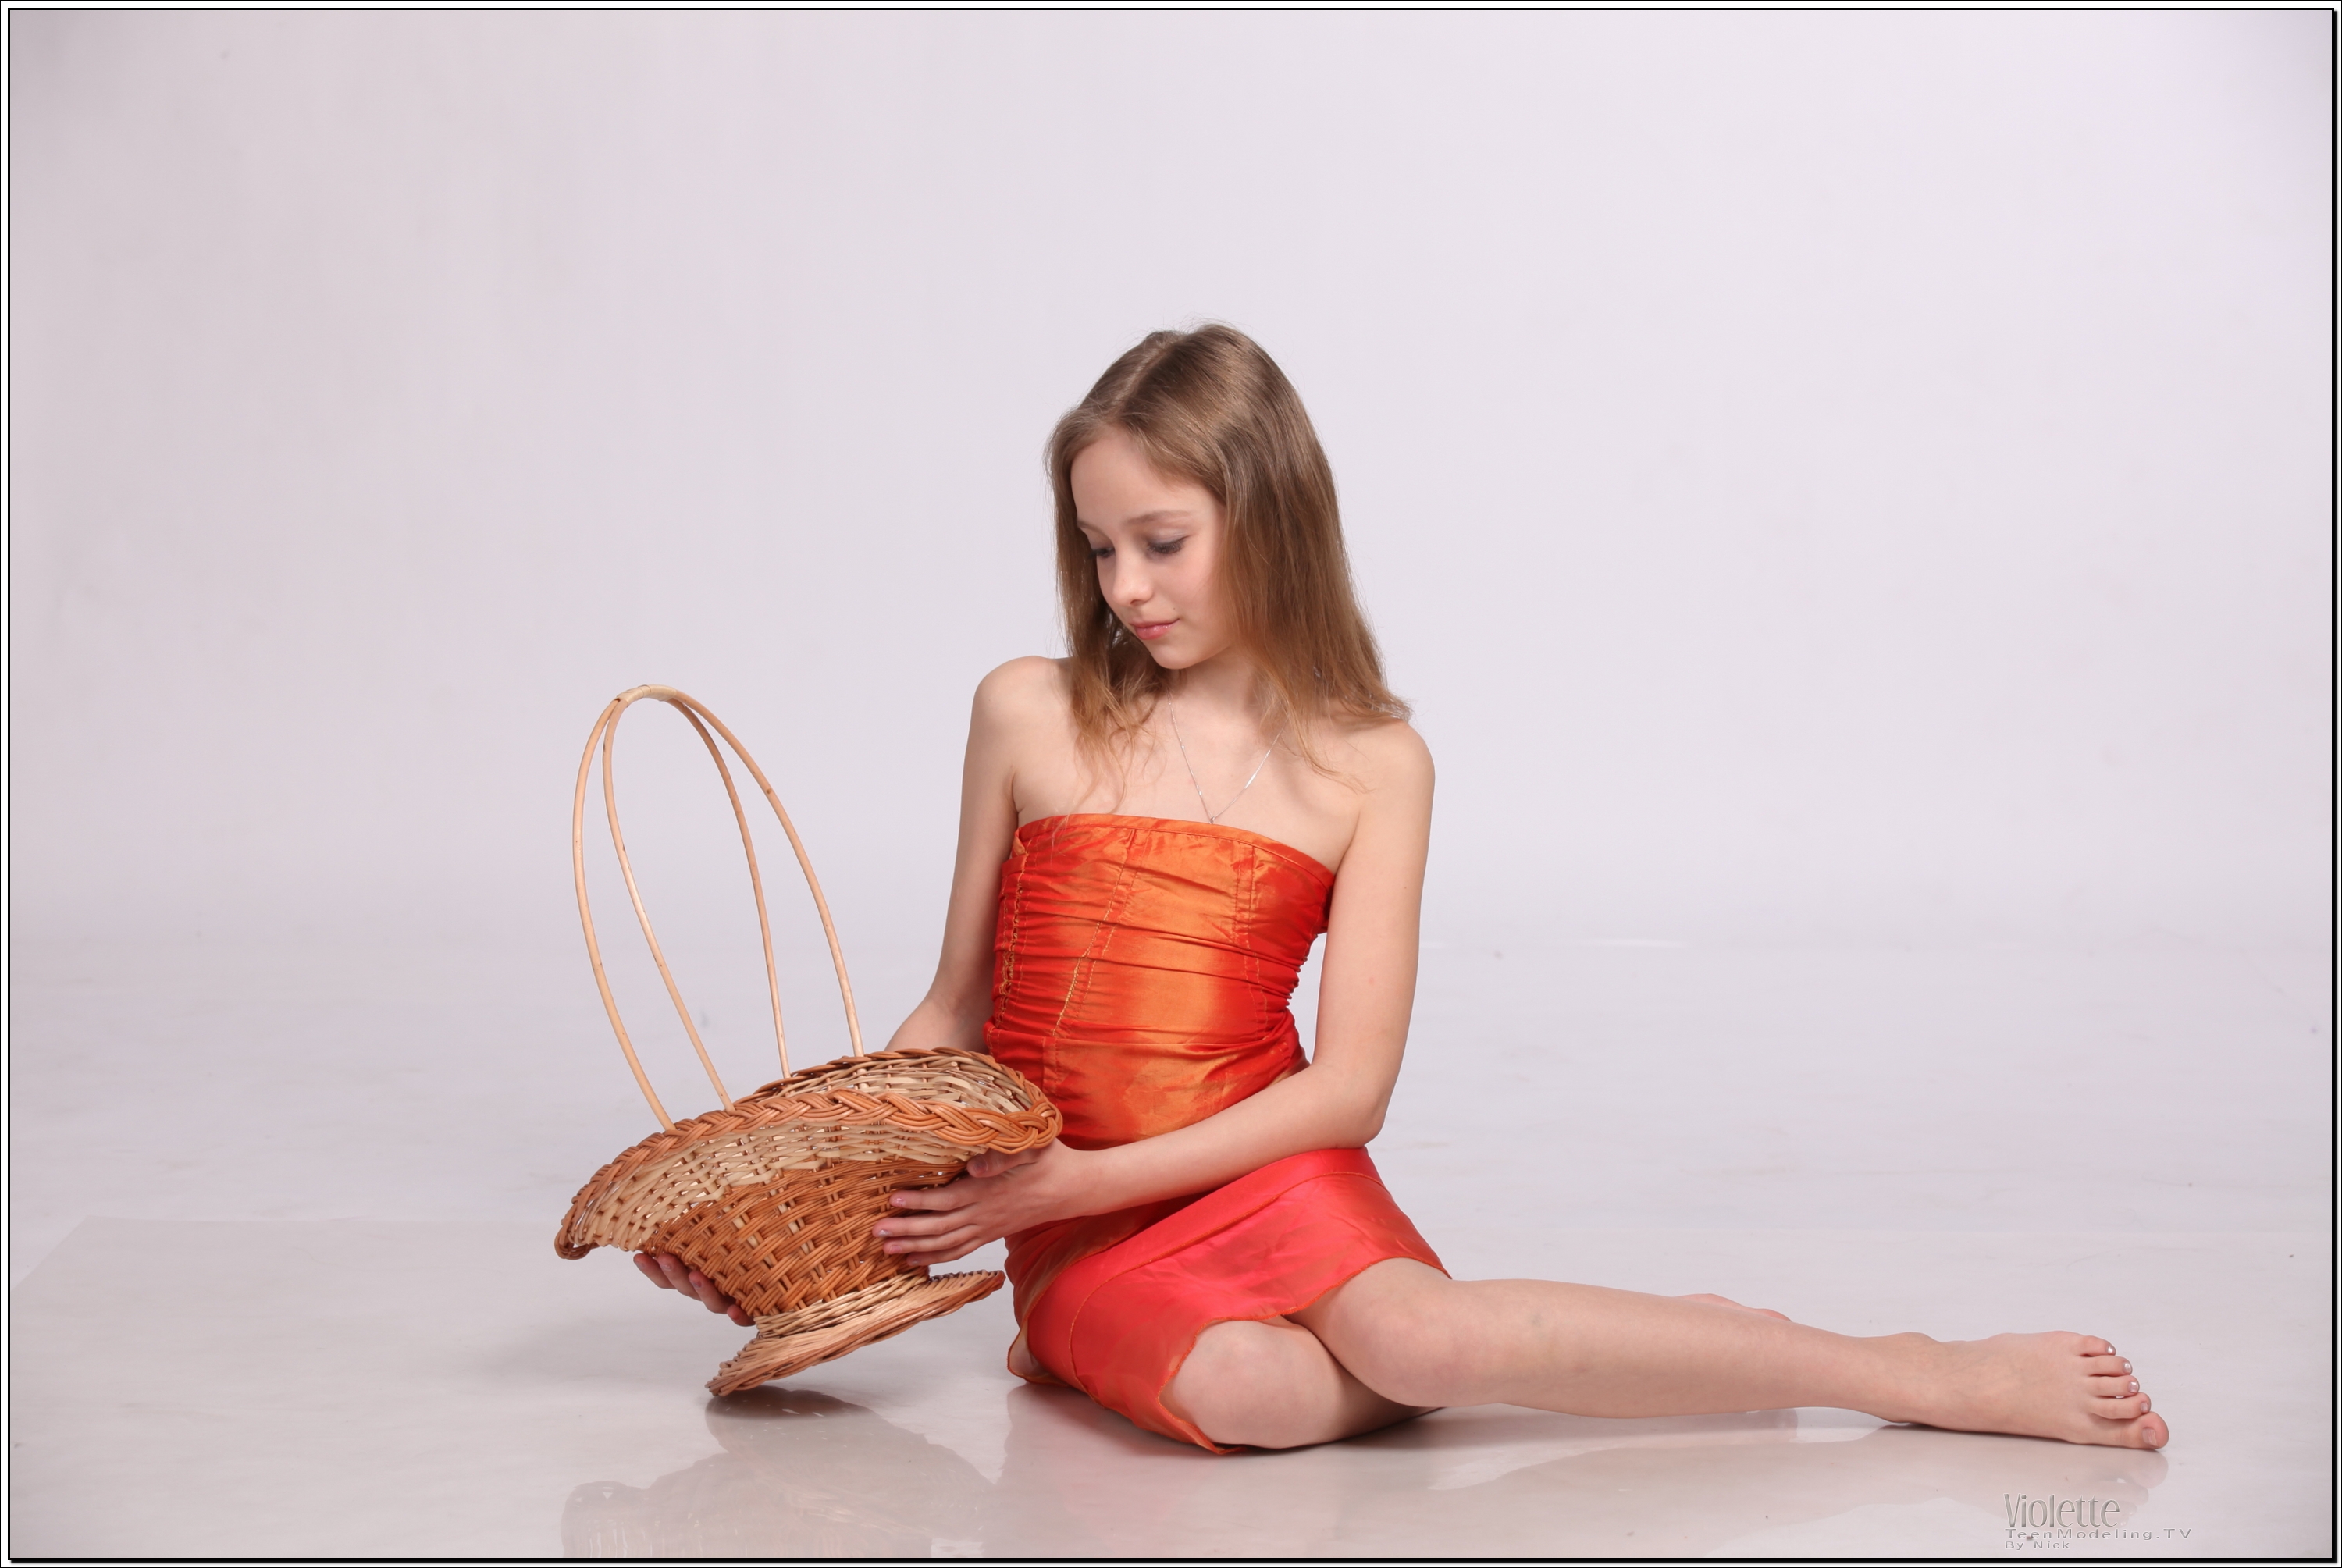 violette_model_orangesheer_teenmodeling_tv_002.jpg